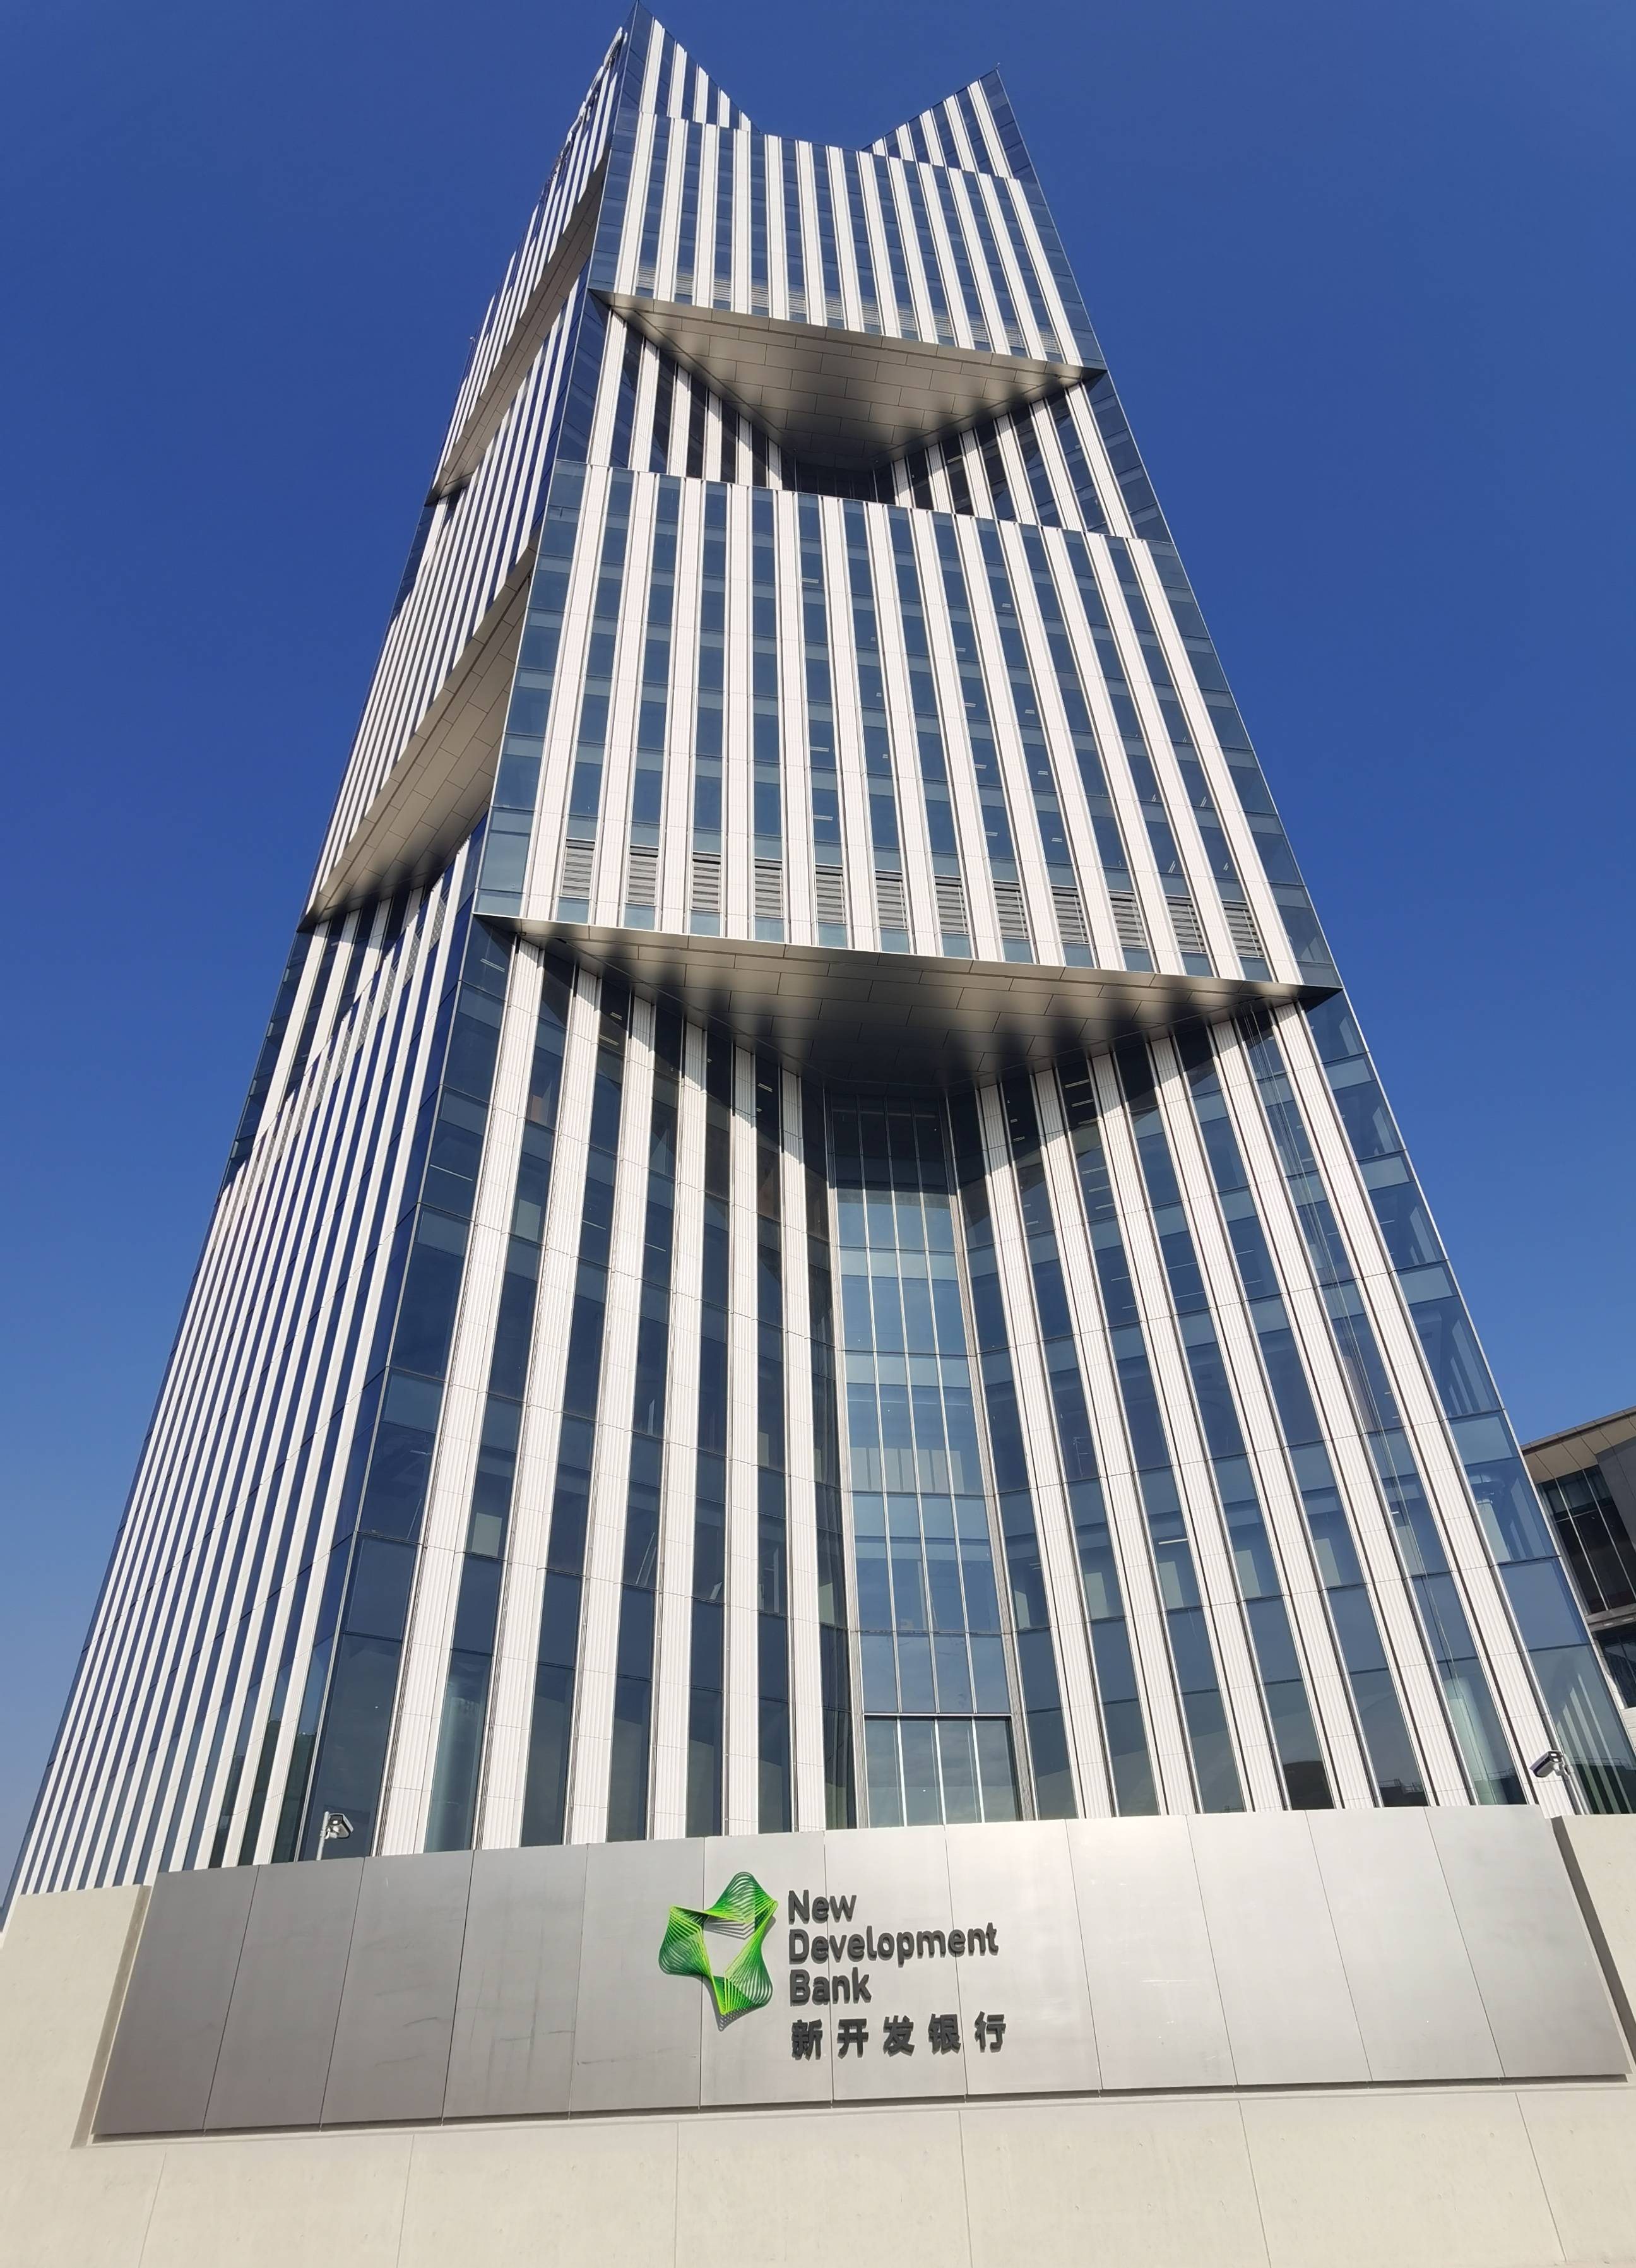 对标世界银行安防标准 新开发银行总部大楼在沪竣工